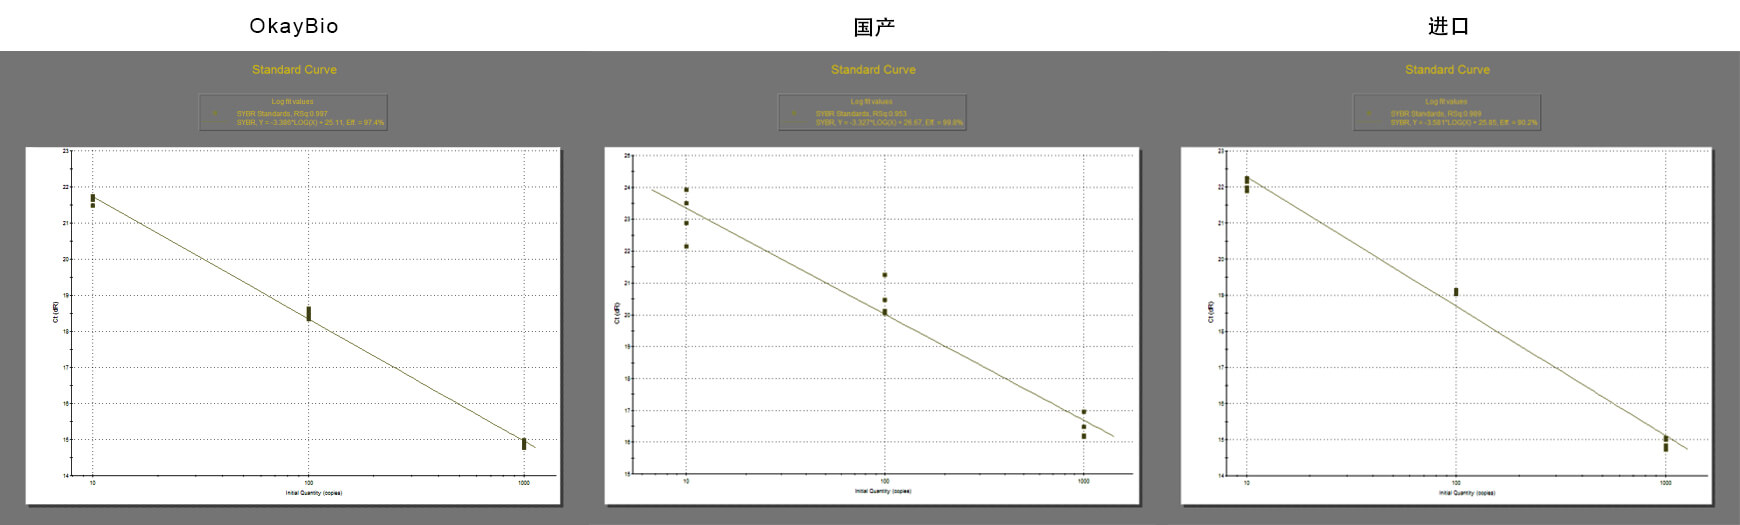 欧凯生物的实时荧光定量PCR试剂盒的标准曲线比对图